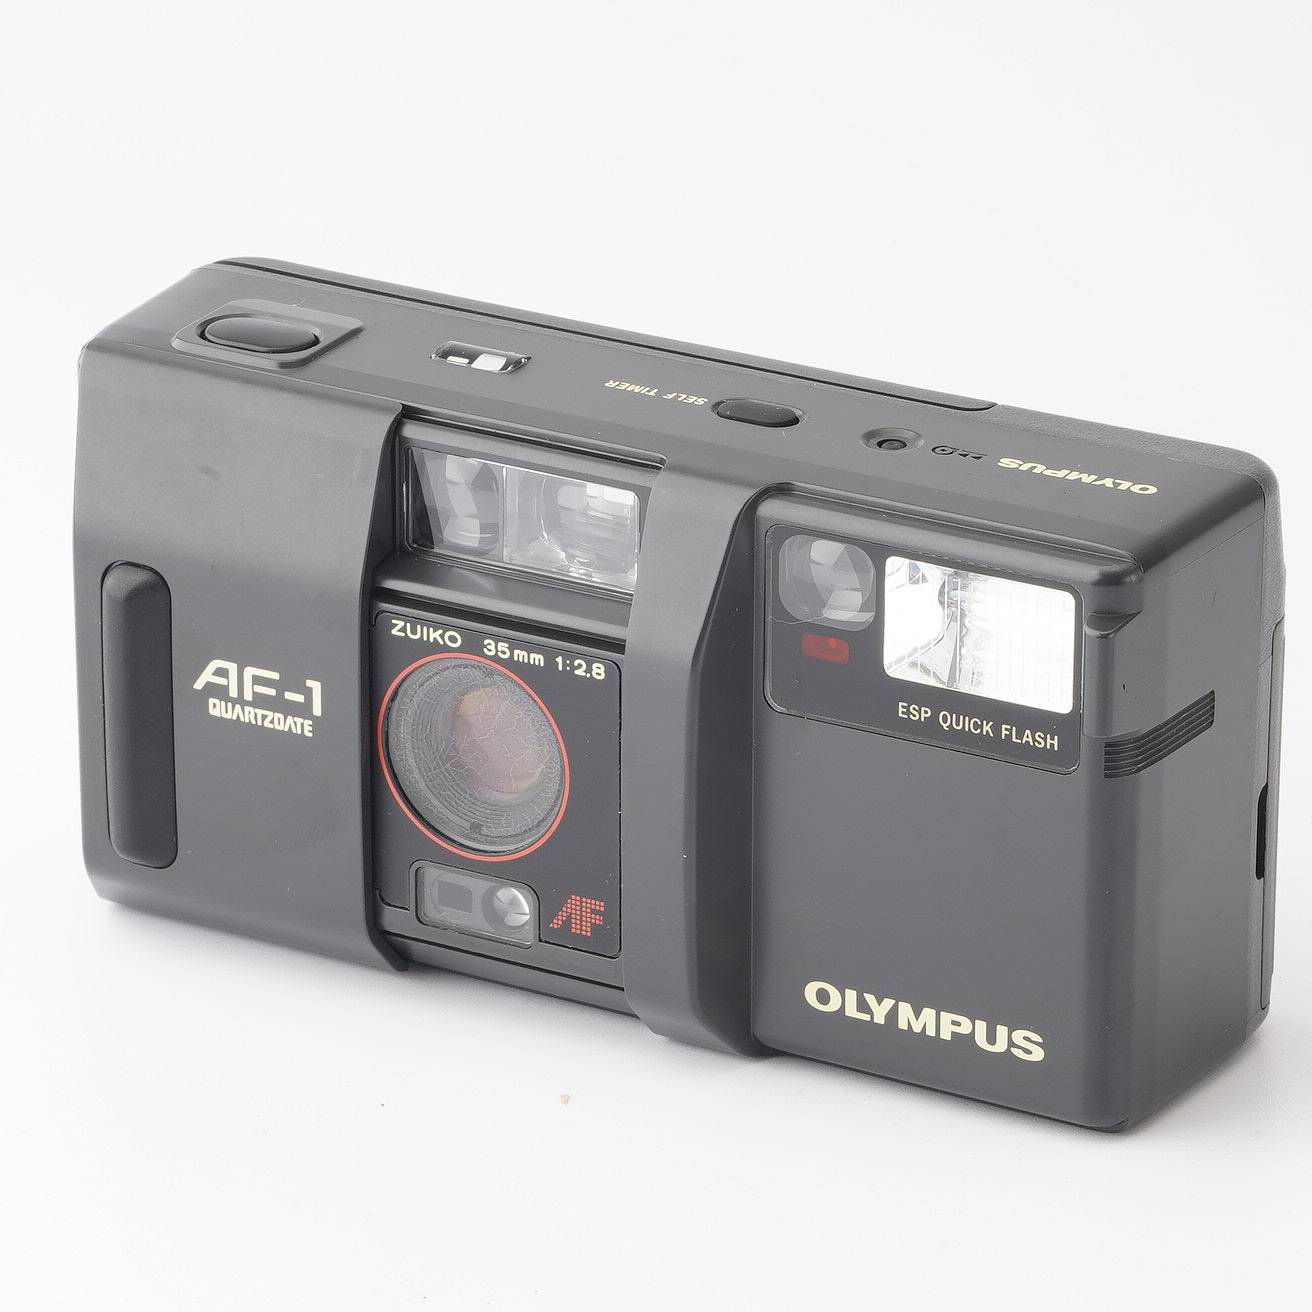 オリンパス Olympus AF-1 QUARTZ DATE / ZUIKO 35mm F2.8 – Natural